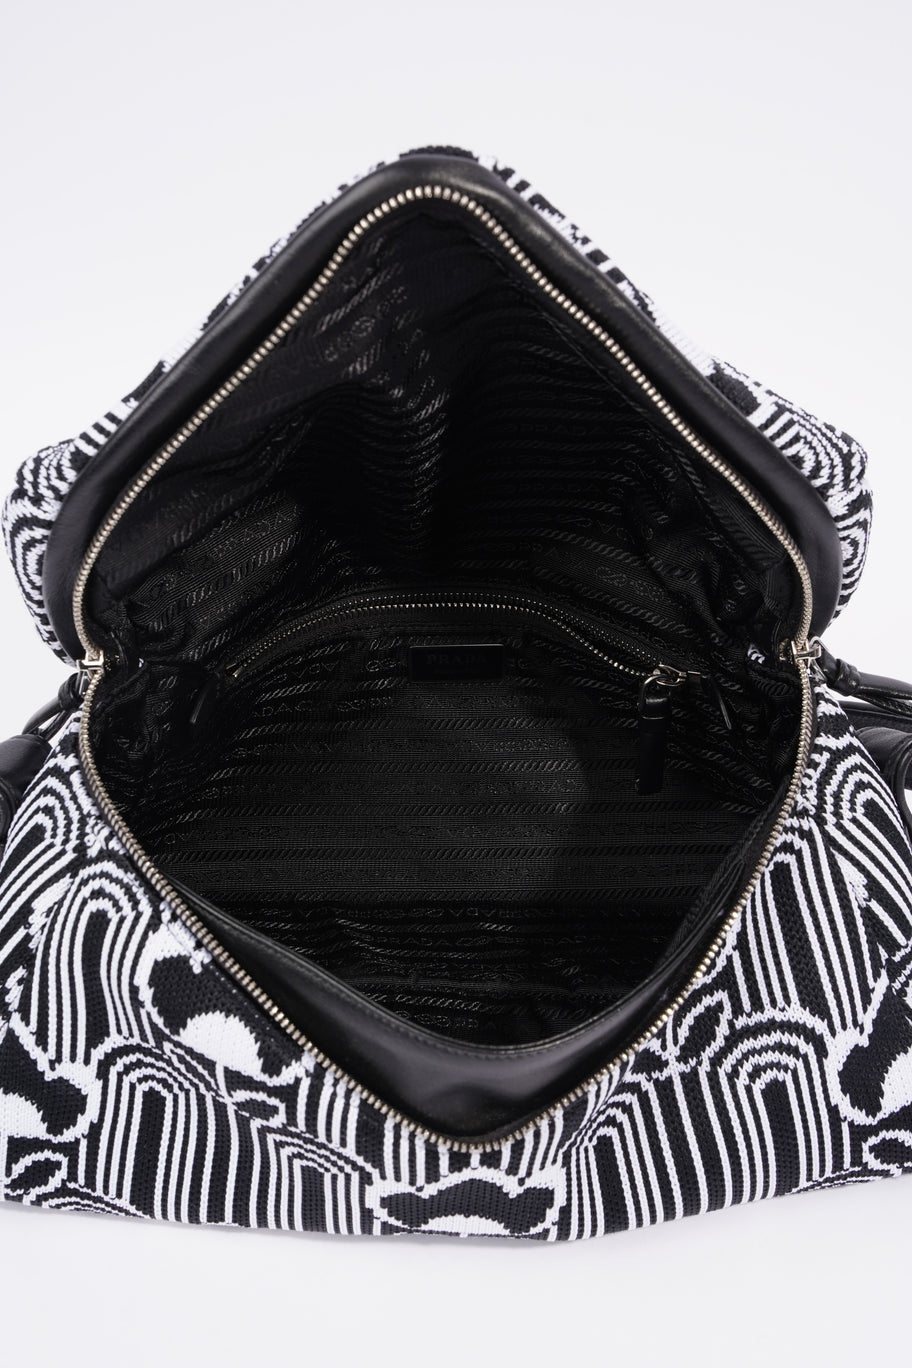 Signaux Jacquard Shoulder Bag Black / White Fabric Image 7